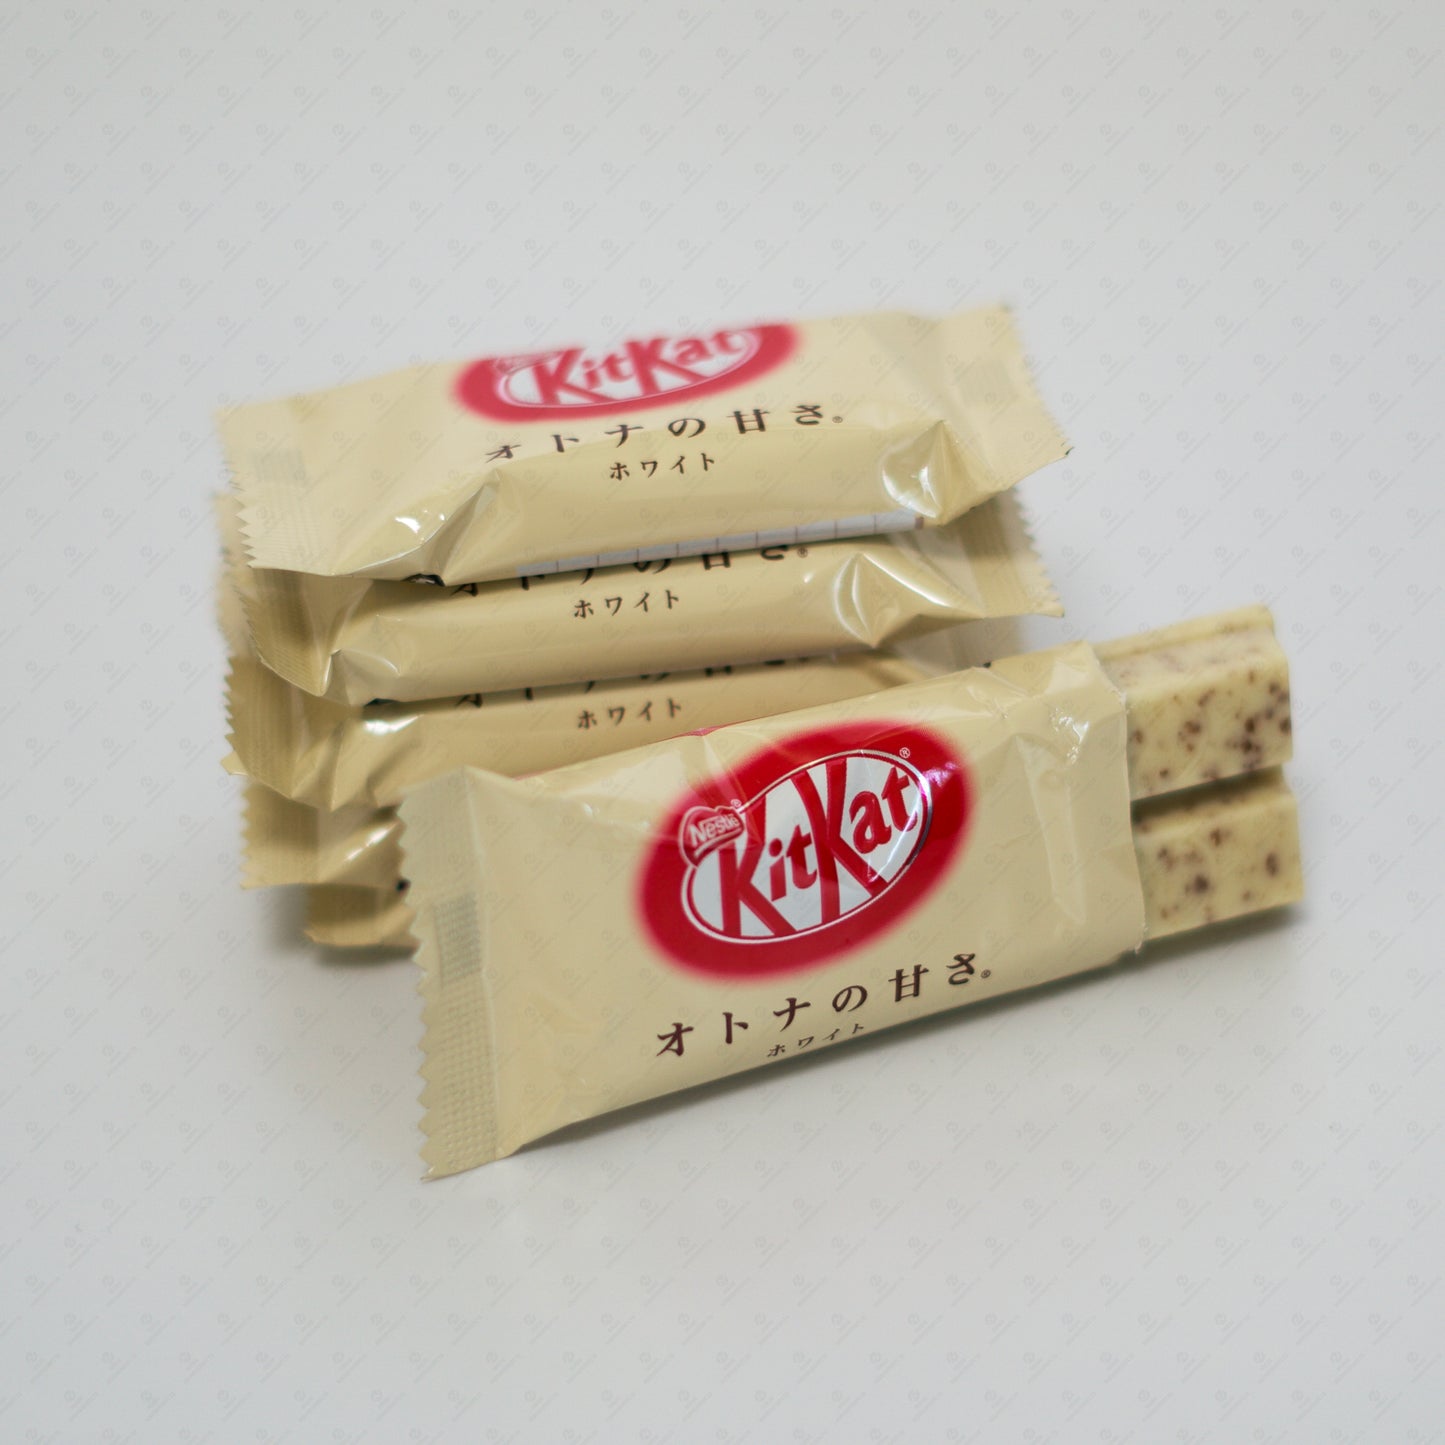 Nestle Japanese KitKat Adult Sweetness White Mini Bars 11 Pcs